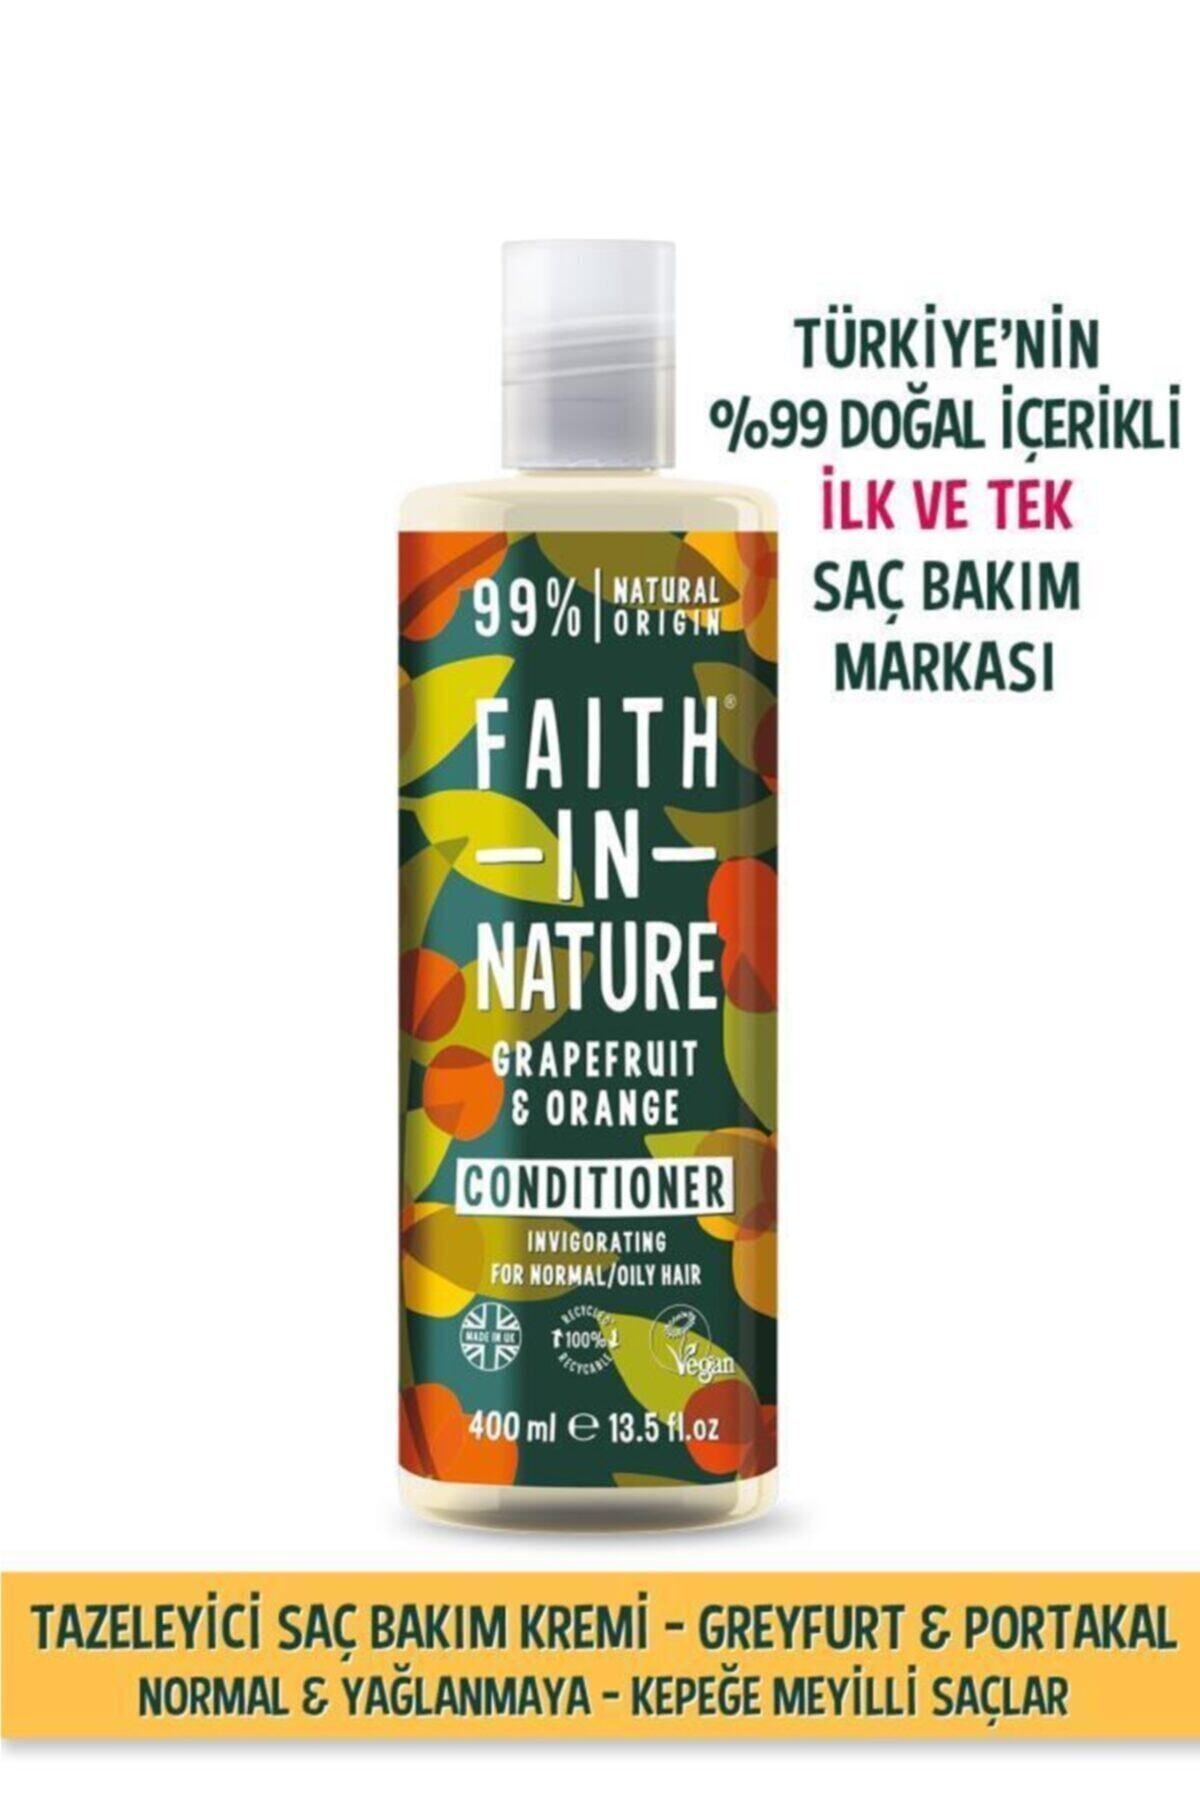 Faith In Nature %99 Doğal Tazeleyici Saç Bakım Kremi Greyfurt&Portakal Normal&Yağlanmaya-Kepeğe Meyilli Saçlar İçin